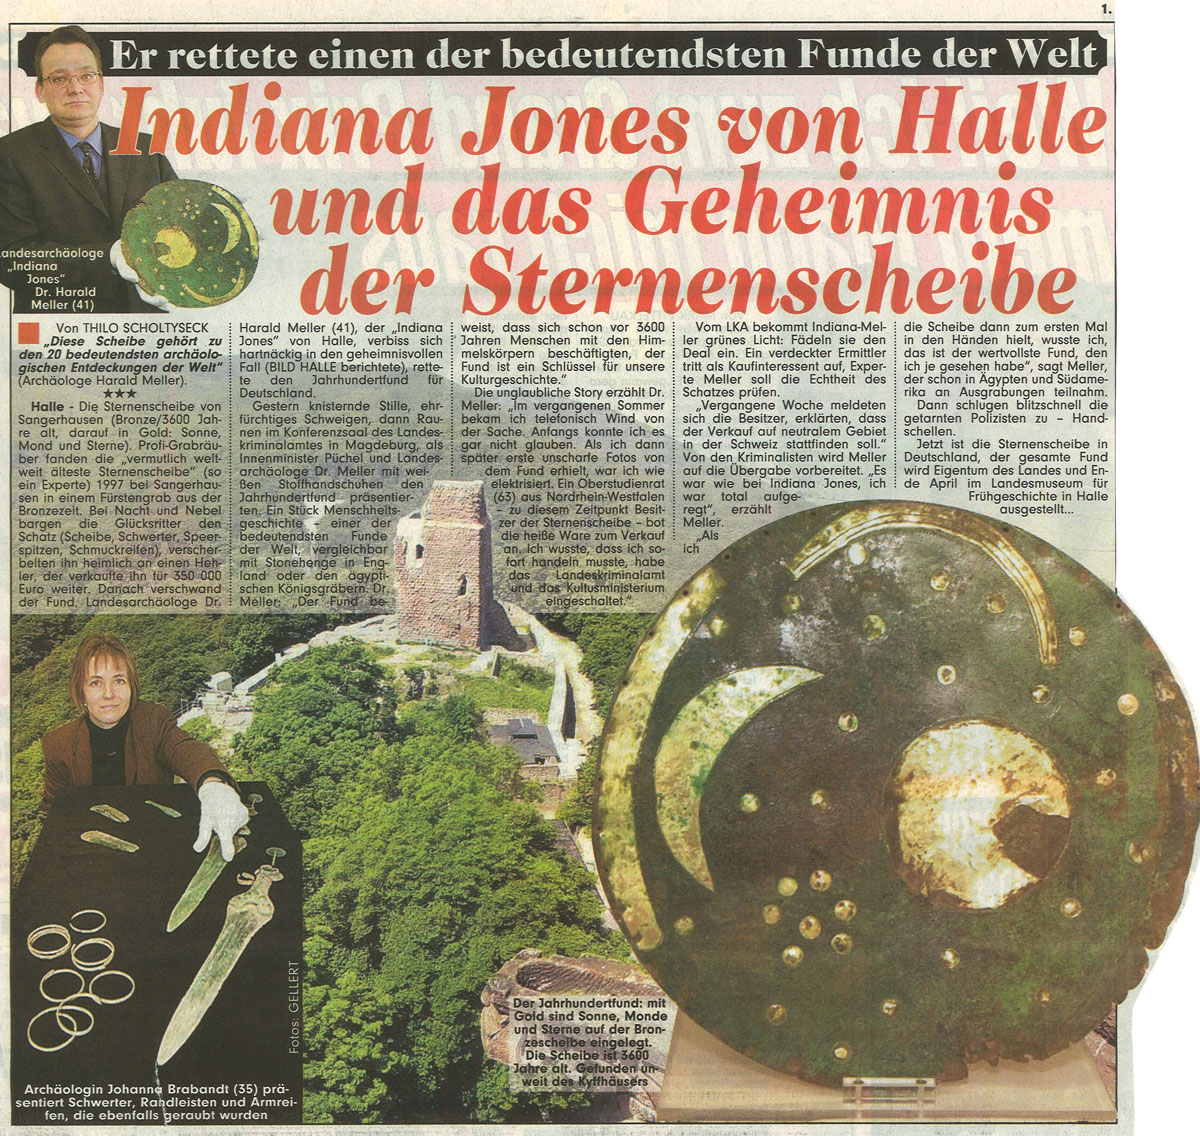 BILD Halle (Saale), 01.03.2002. © BILD.